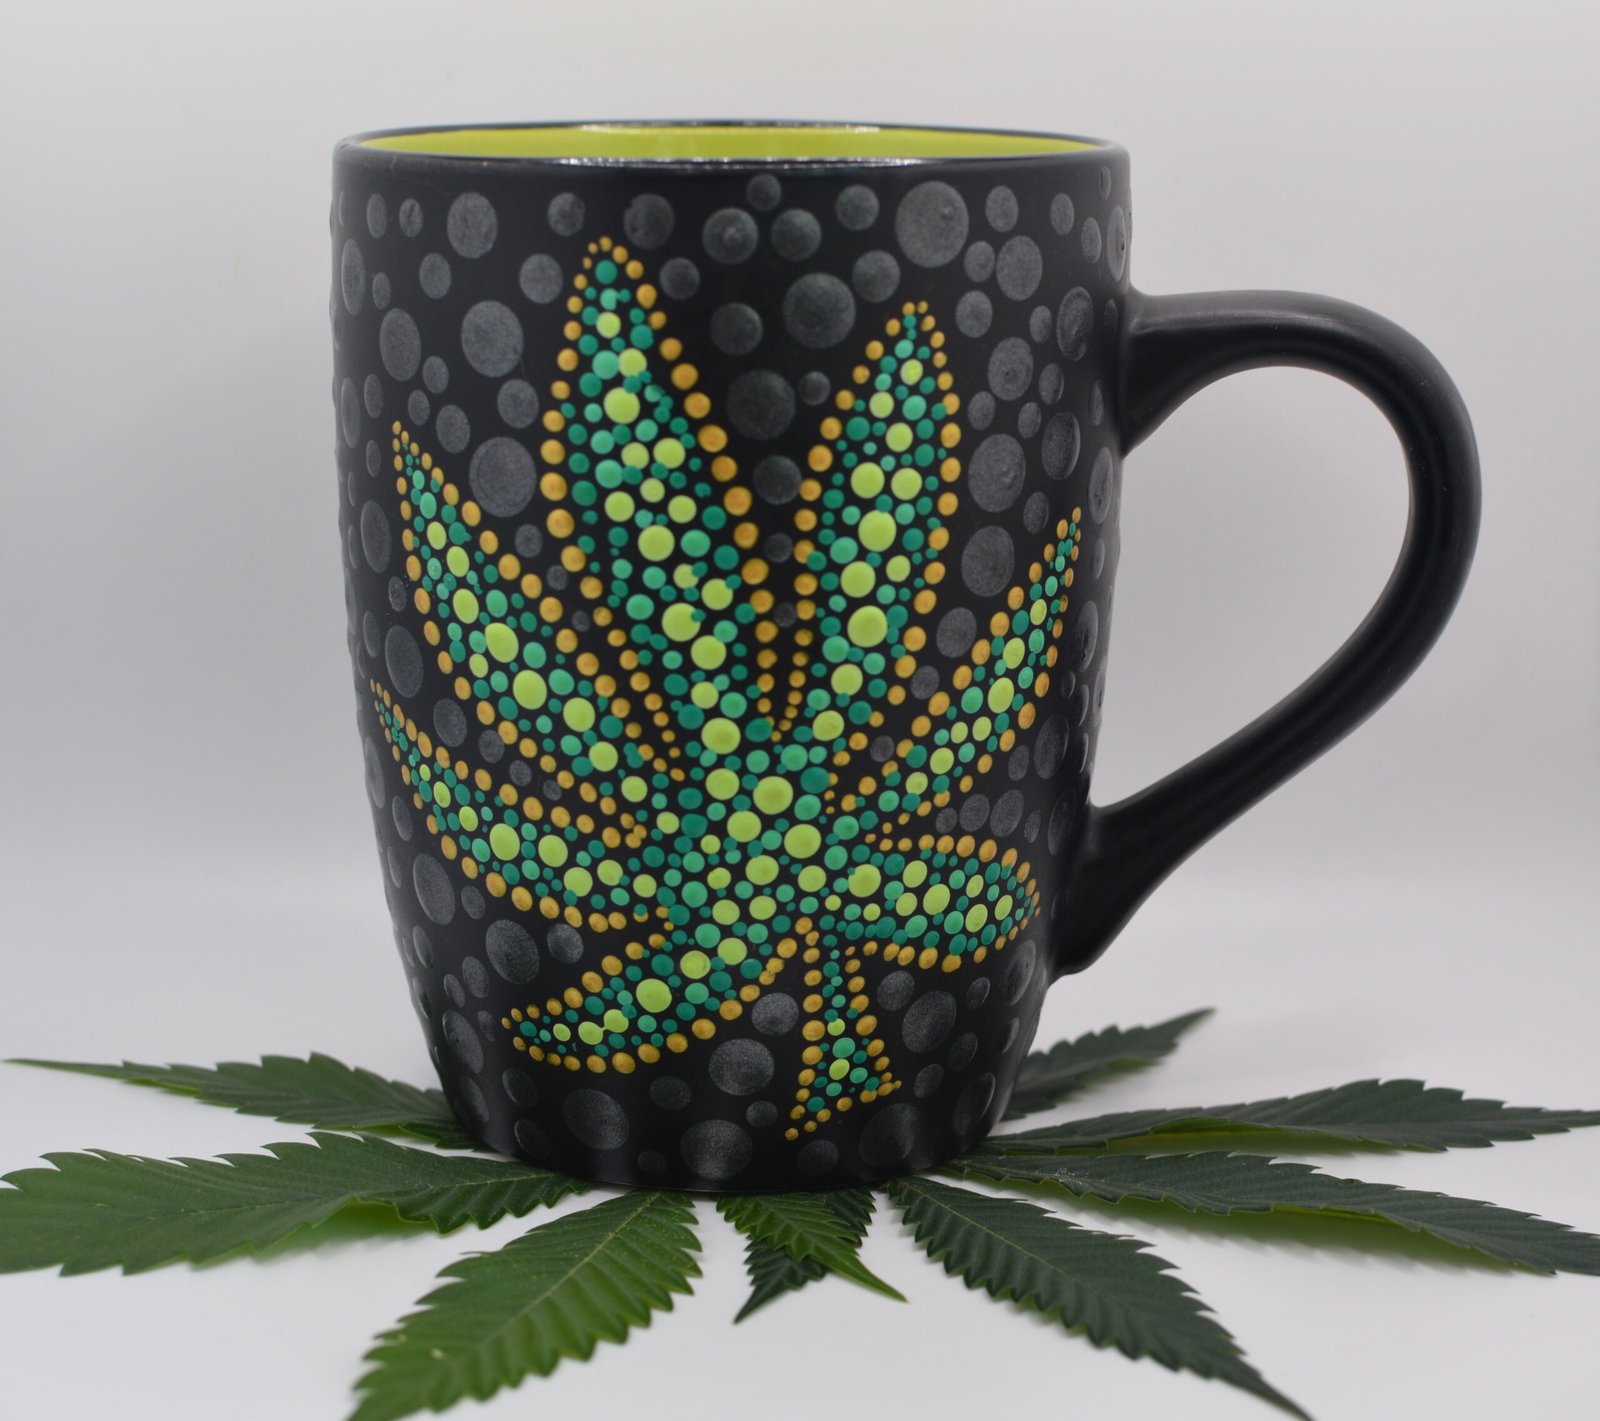 Hand painted hemp leaf mug